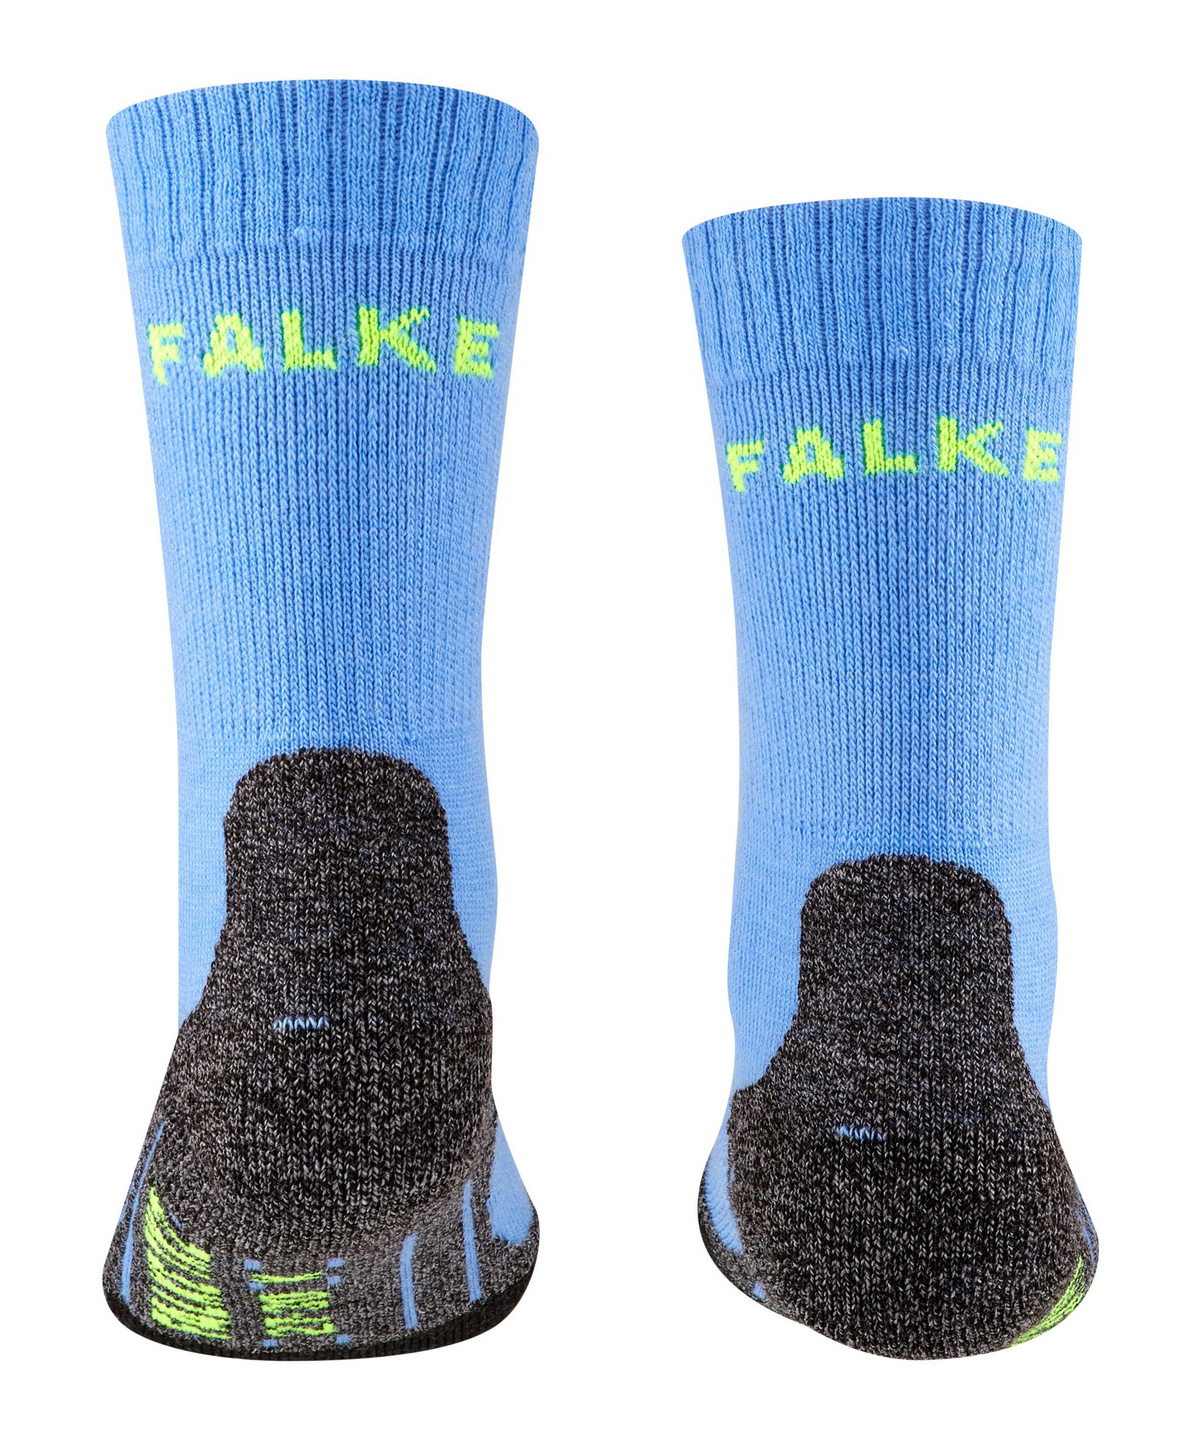 FALKE Kinder Trekking-Socken TK2 Kids 10442 Wildberry 31-34 